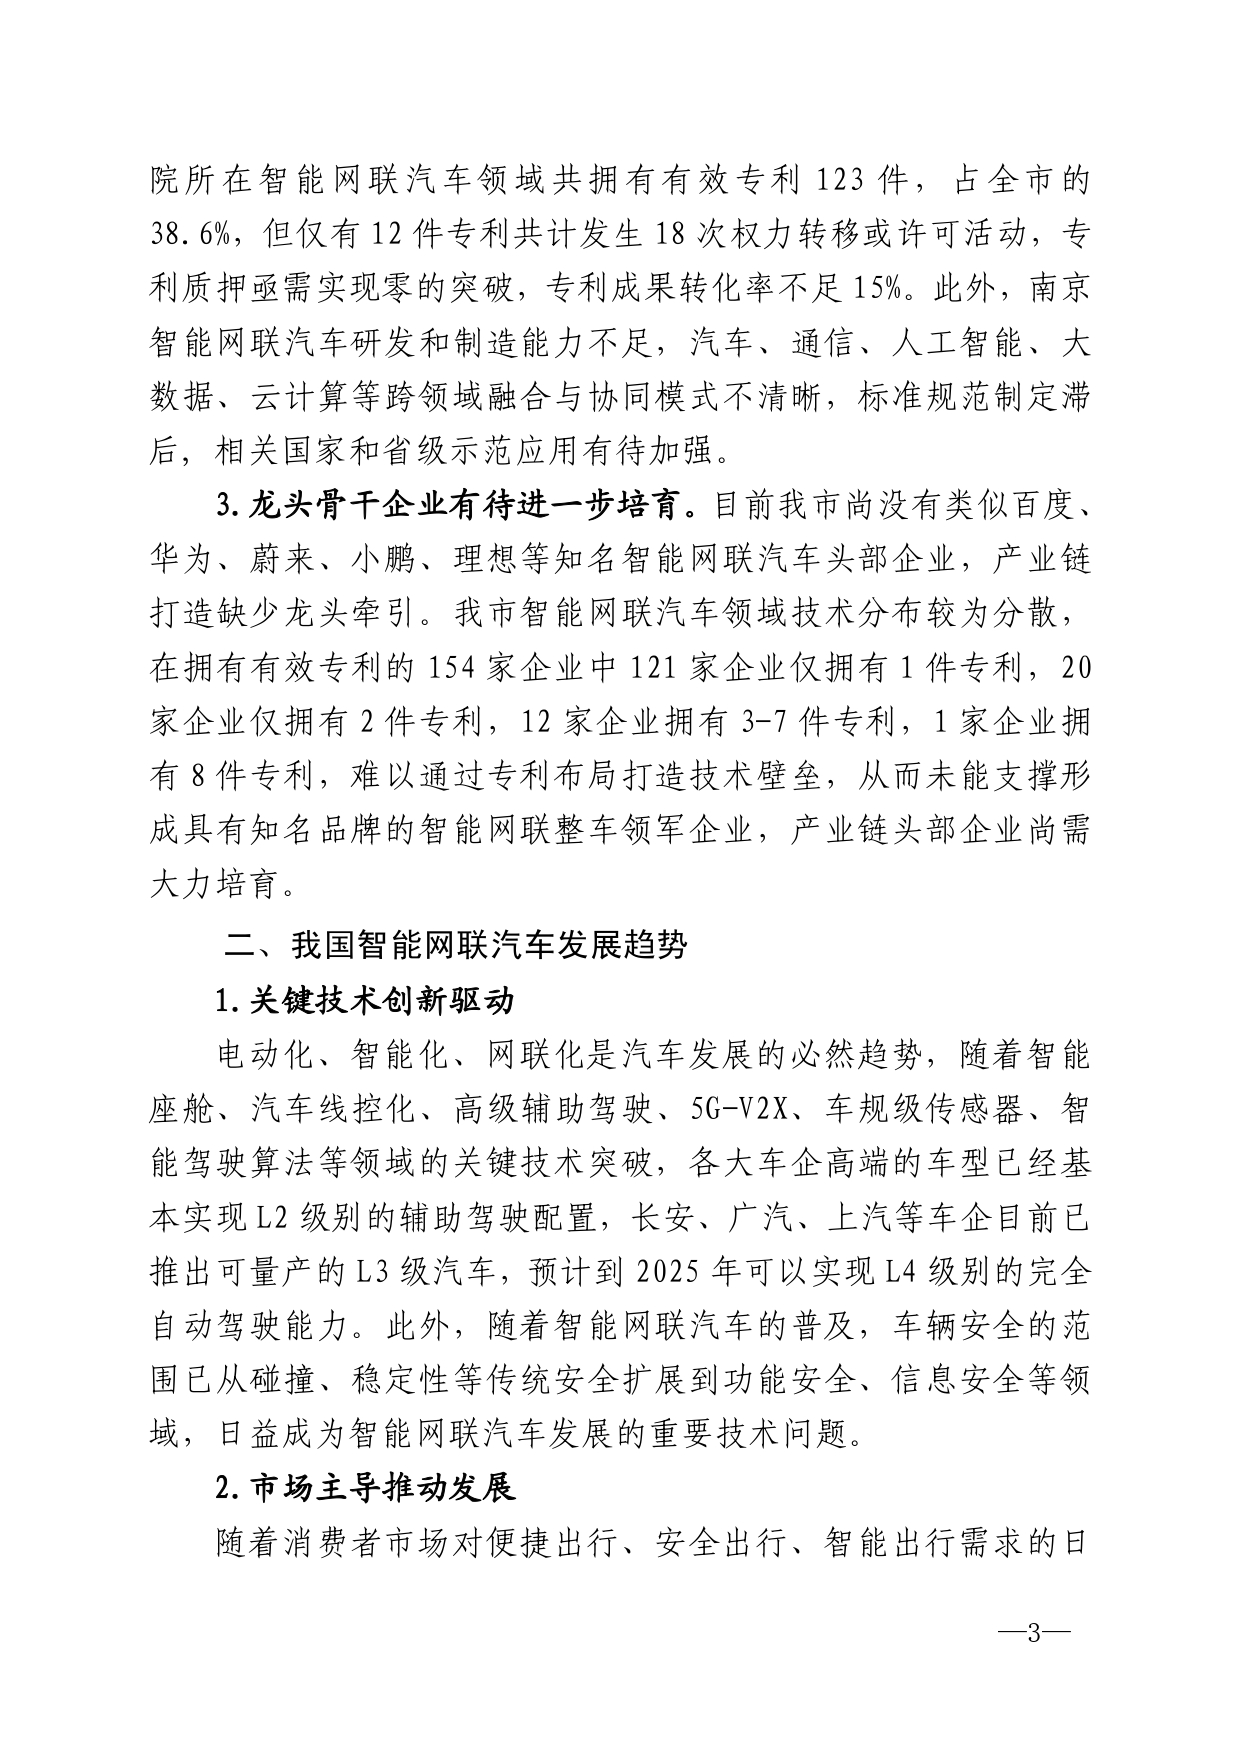 2021年第4期（关于南京智能网联汽车产业高质量发展建议）_page-0003.jpg